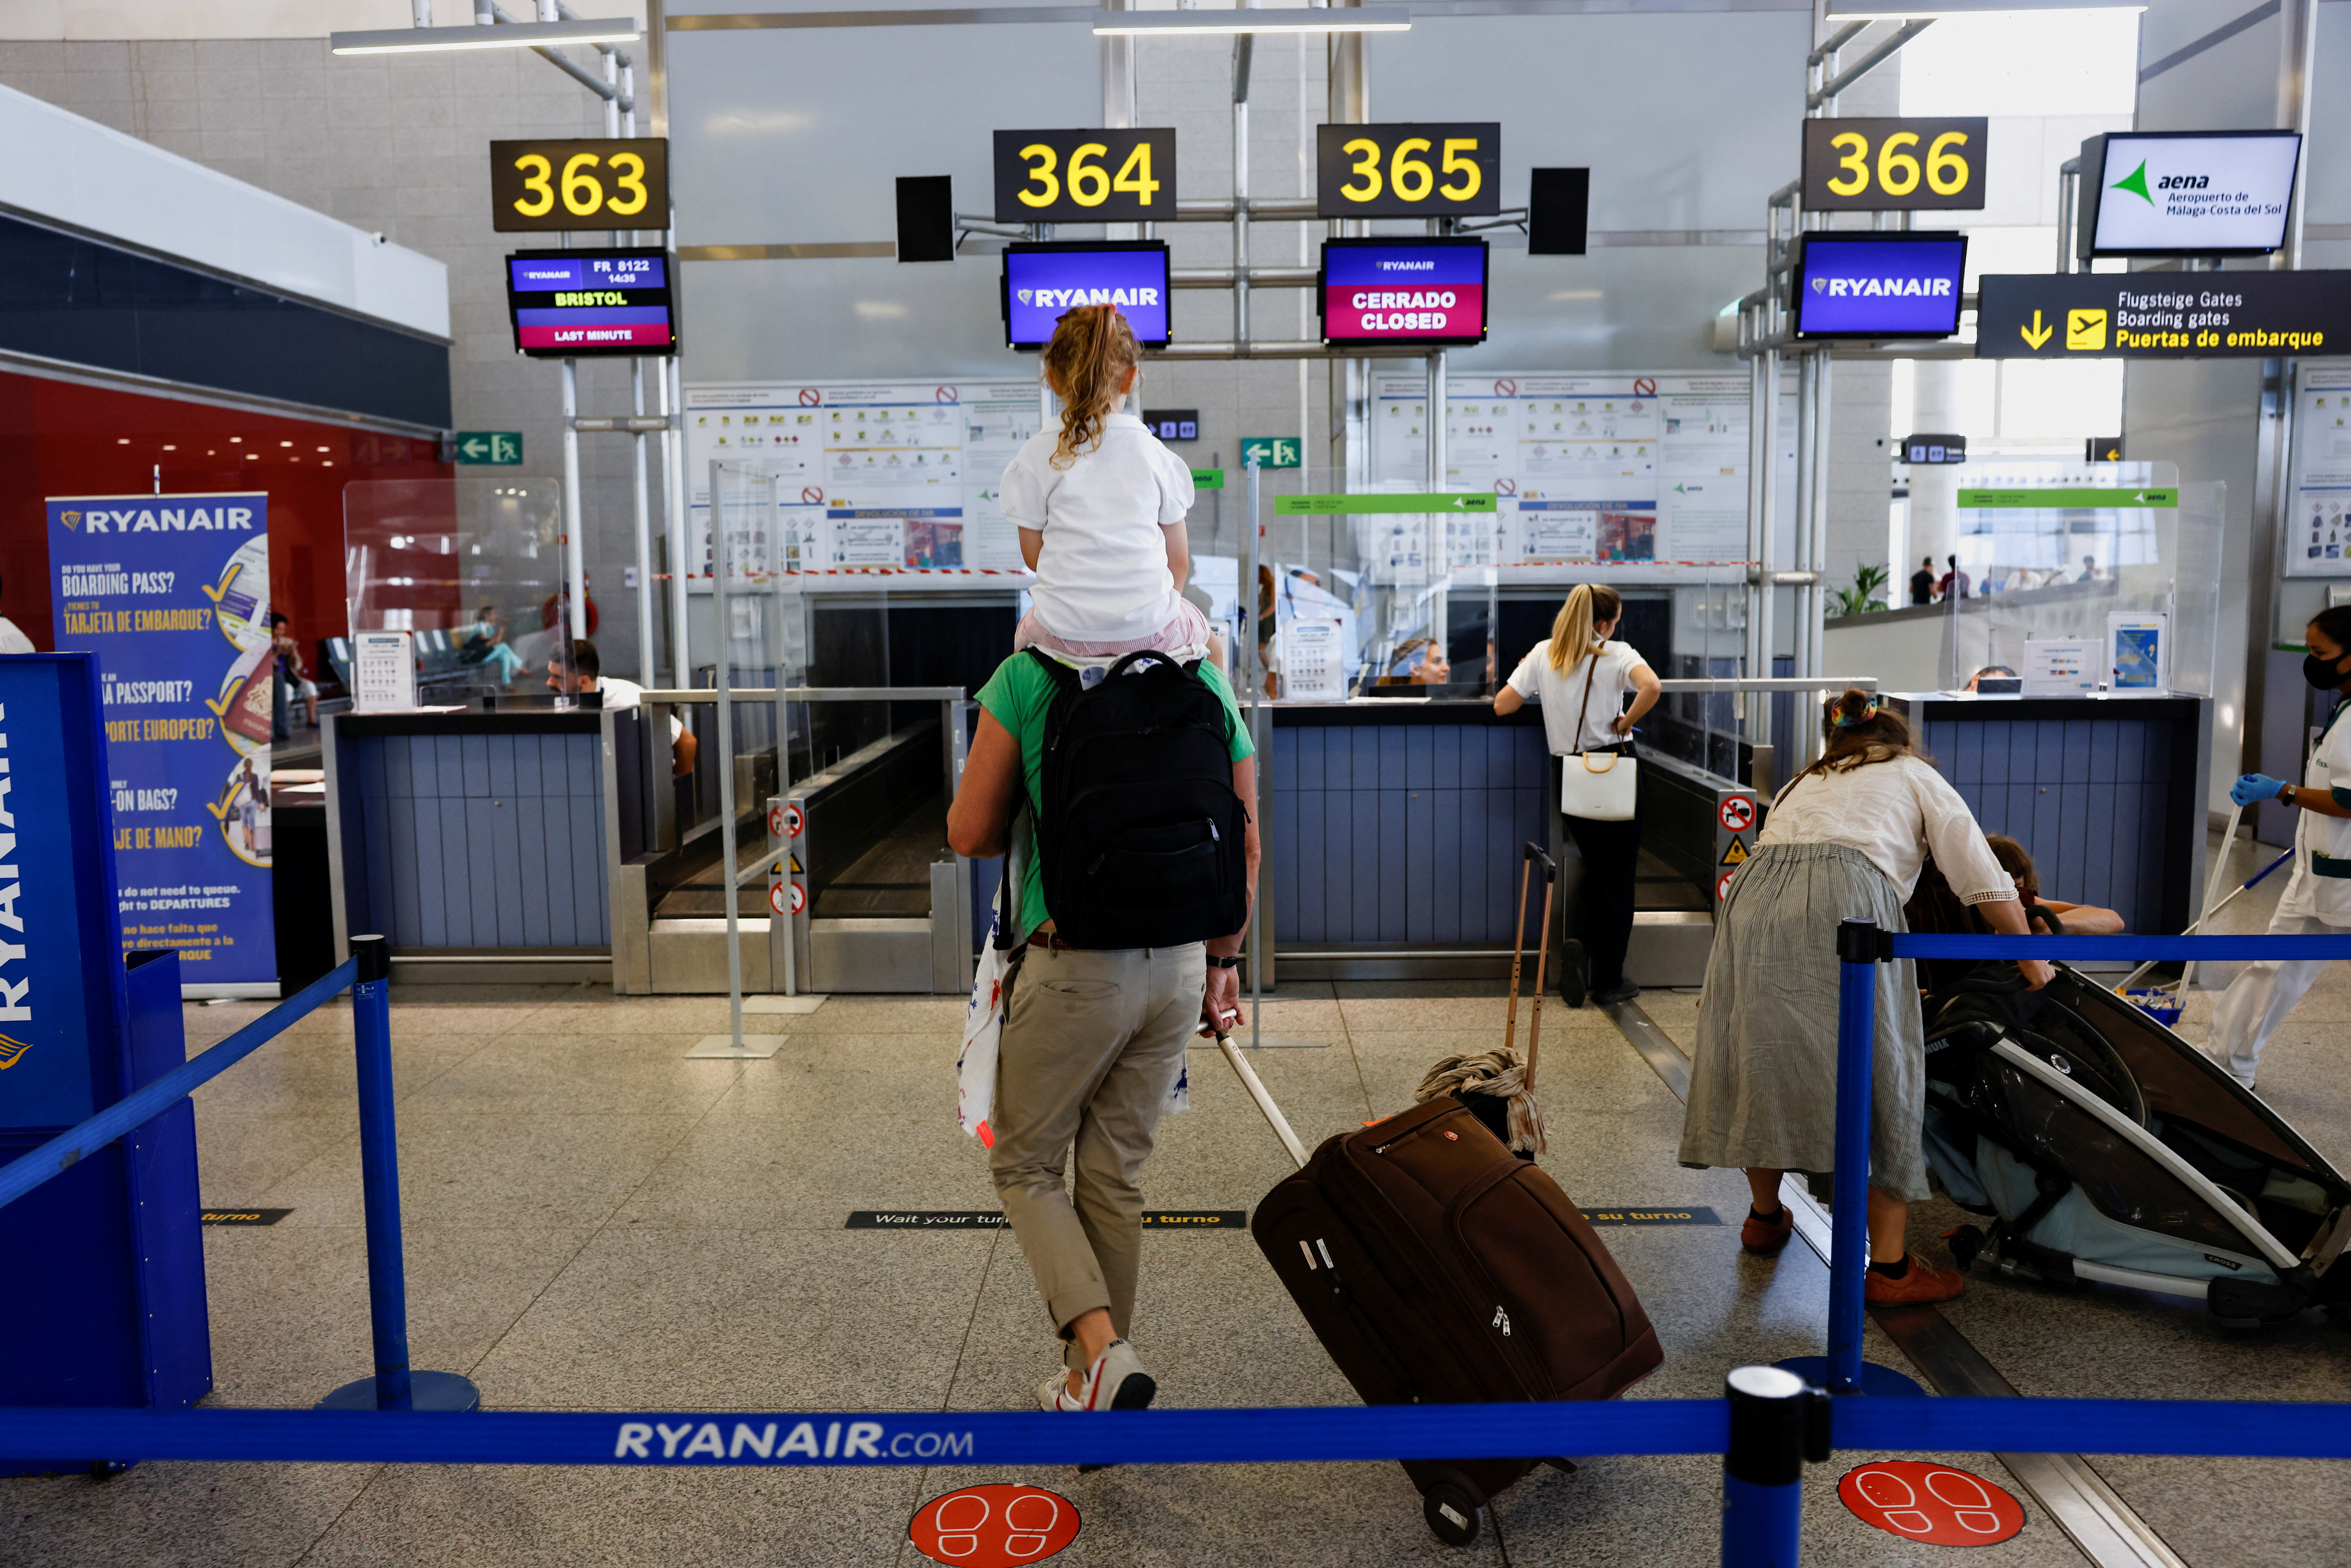 Strike of Spain-based cabin crew of Ryanair airlines